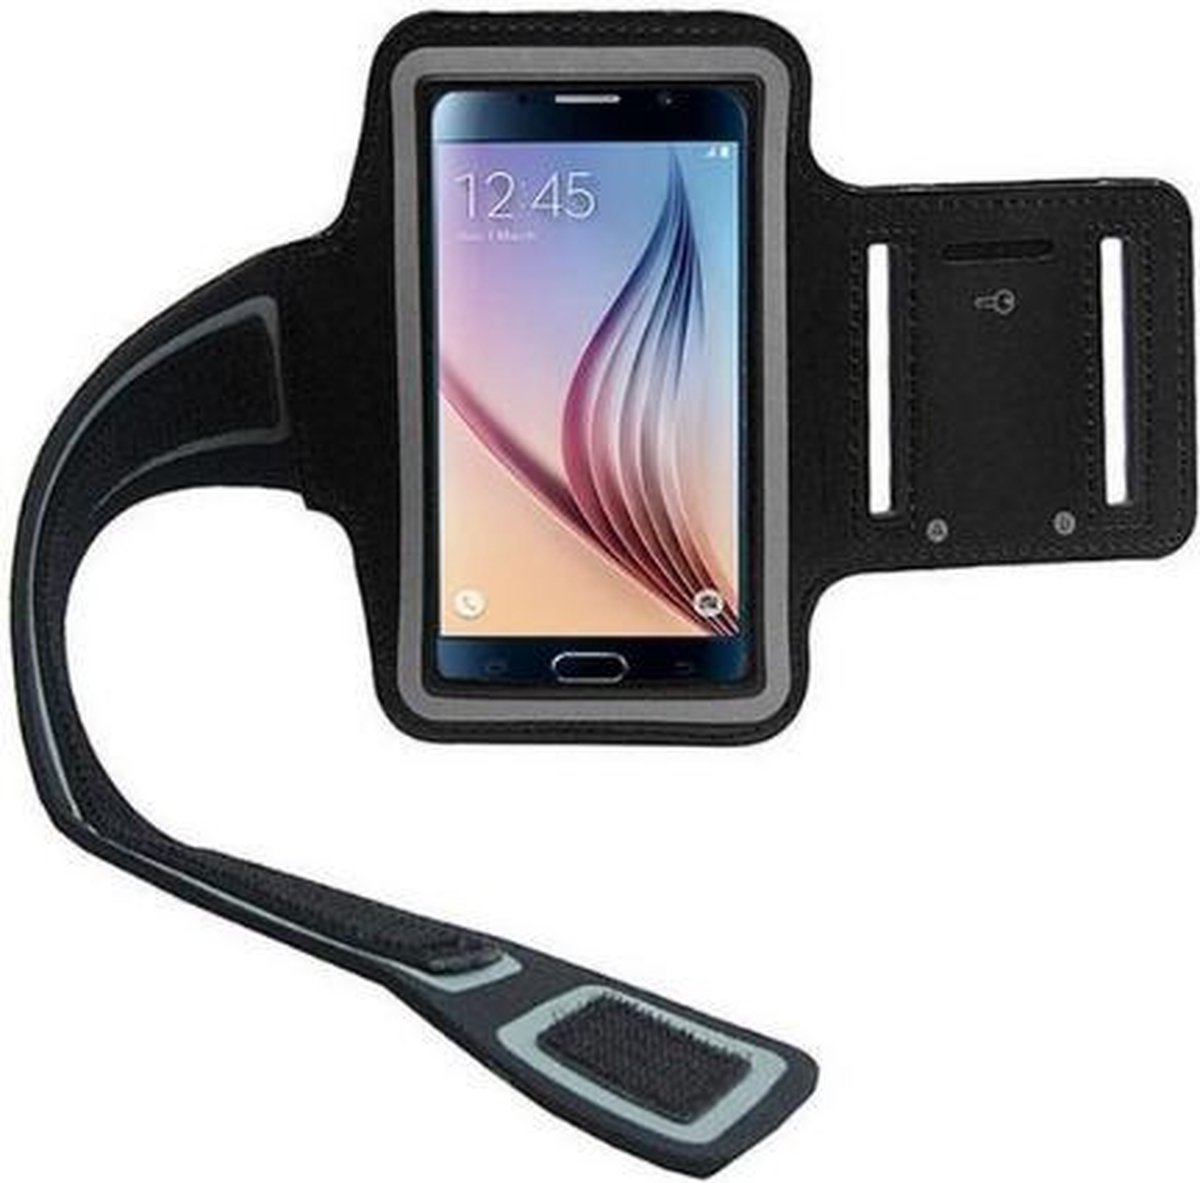 Handige Mobielhouder Arm Voor Hardlopen - Zwart - Joggen - Rennen - Telefoonhouder - Muziek - Armband - Sportarmband - Trainen - Fitness